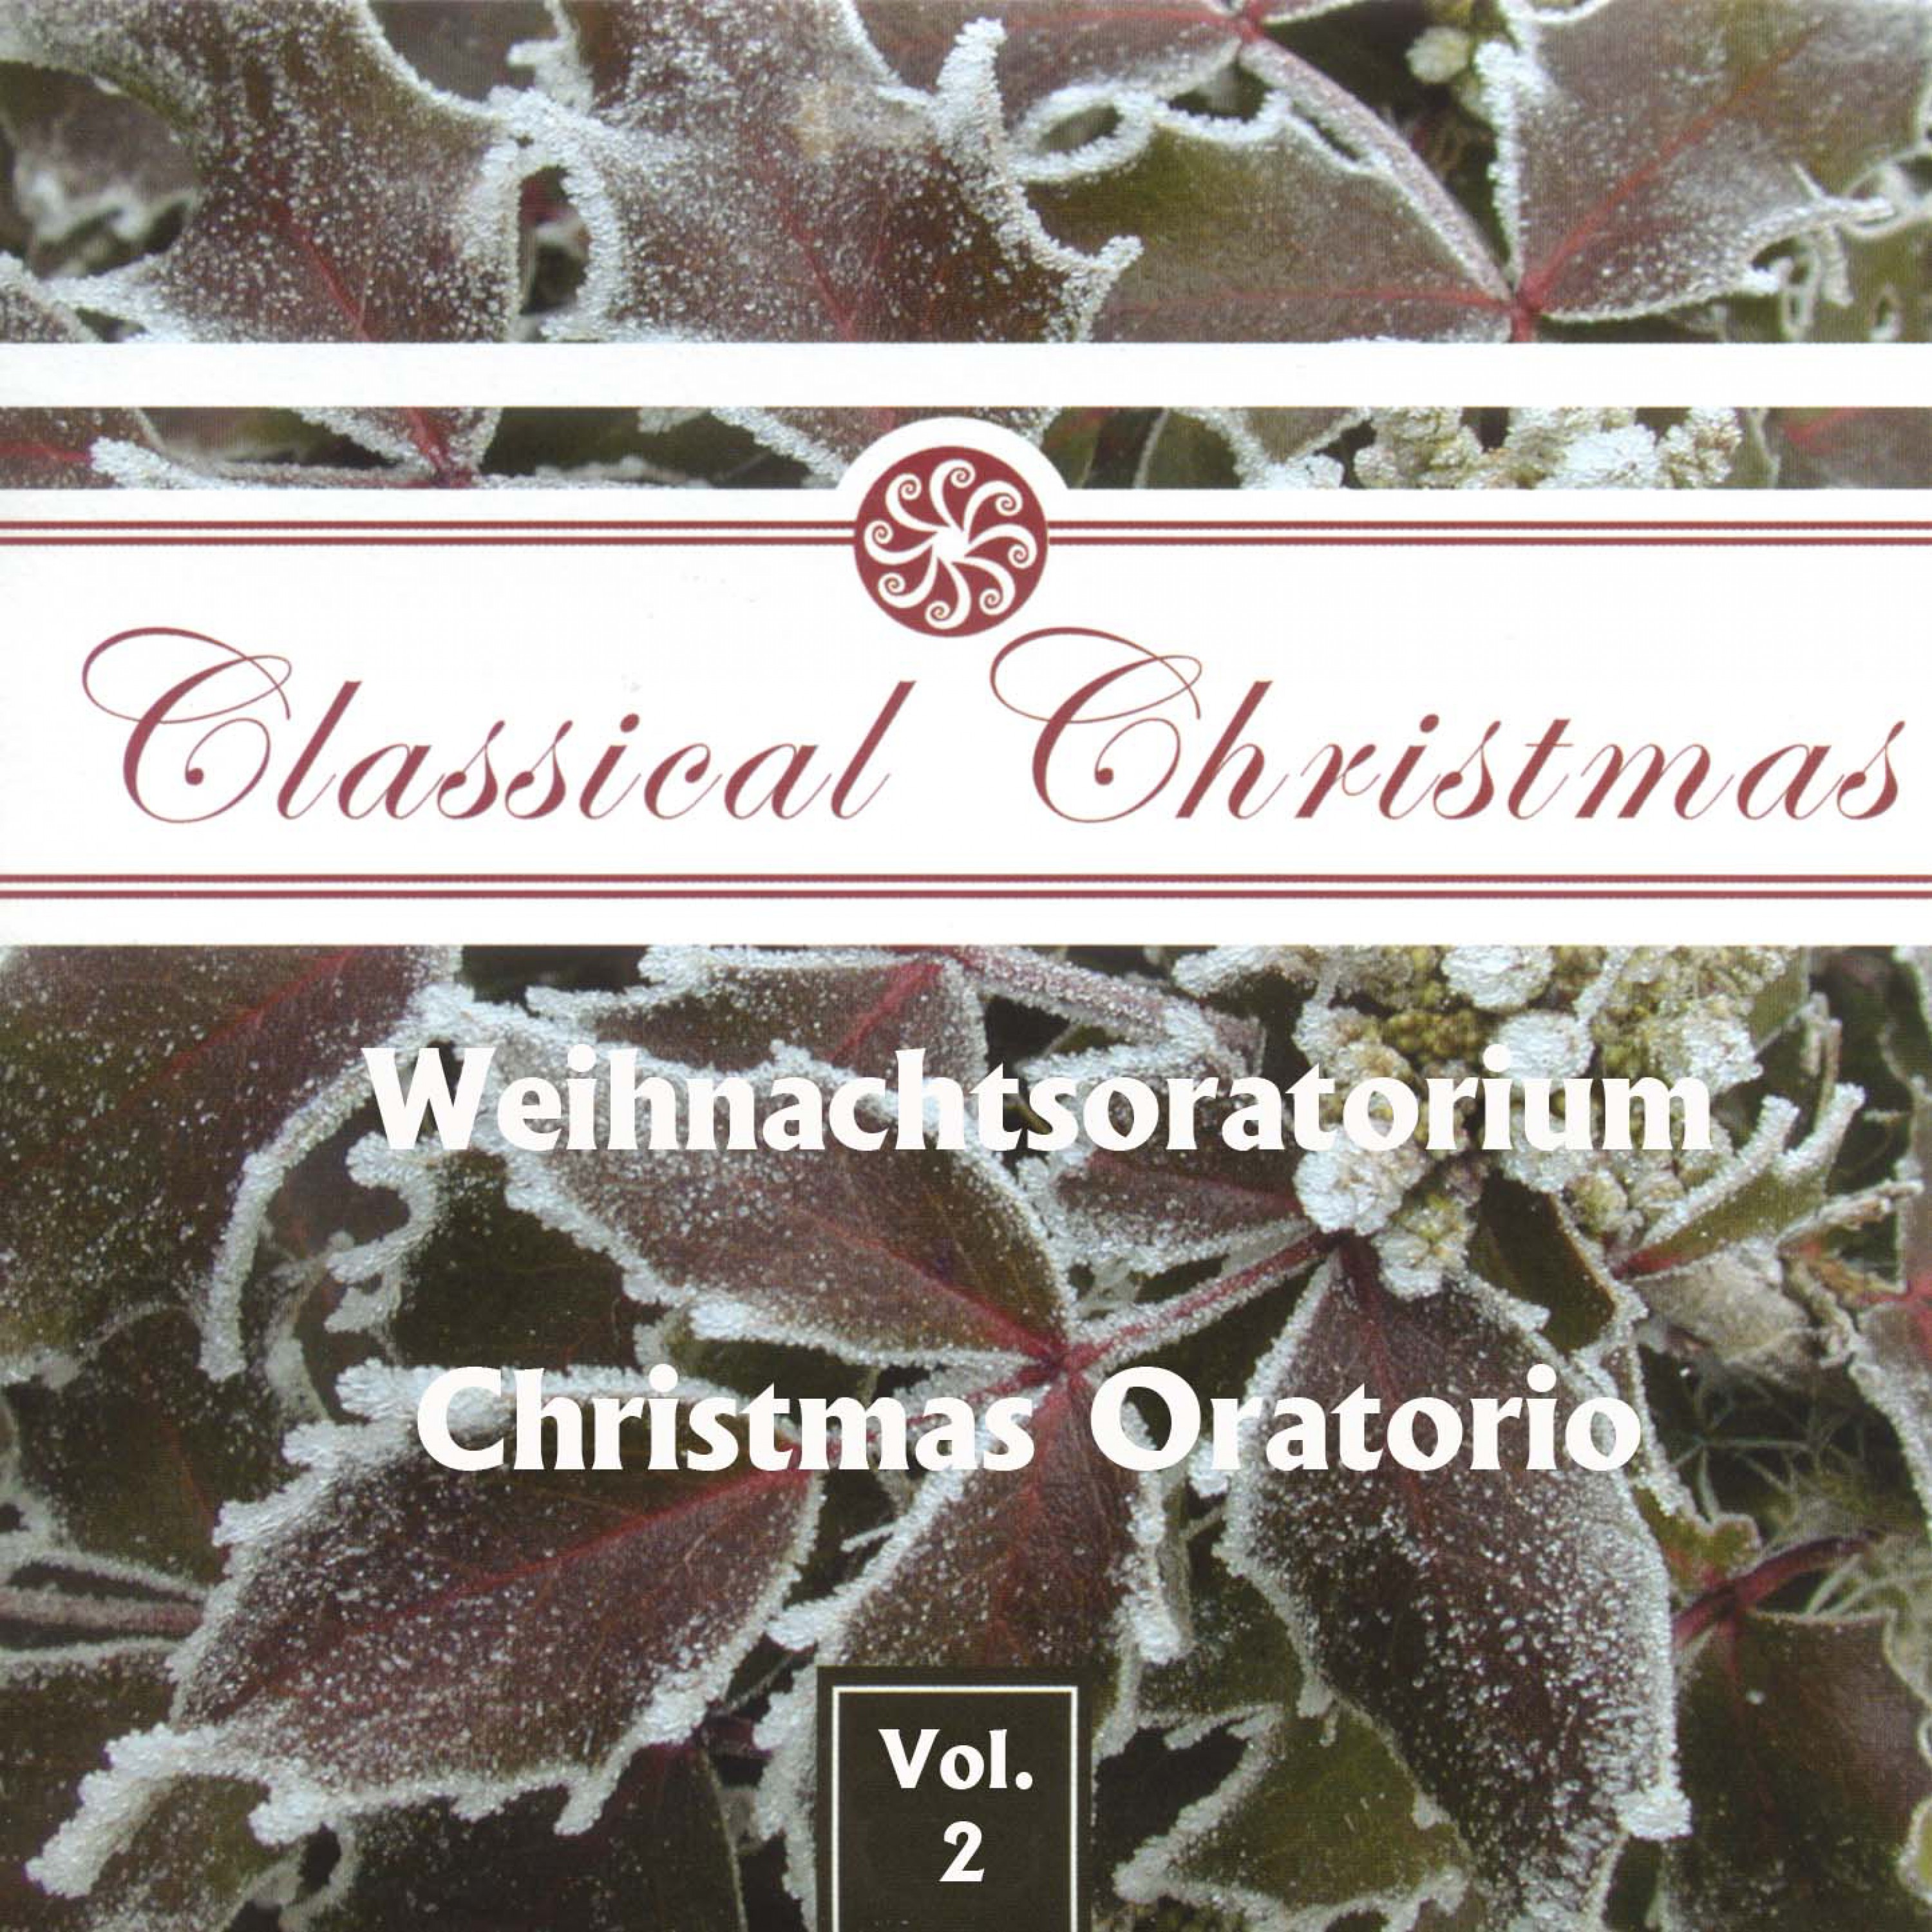 Weihnachtsoratorium, BWV 248  Christmas Oratorio, BWV 248, Teil III  Part III: Er hat sein Volk getr st